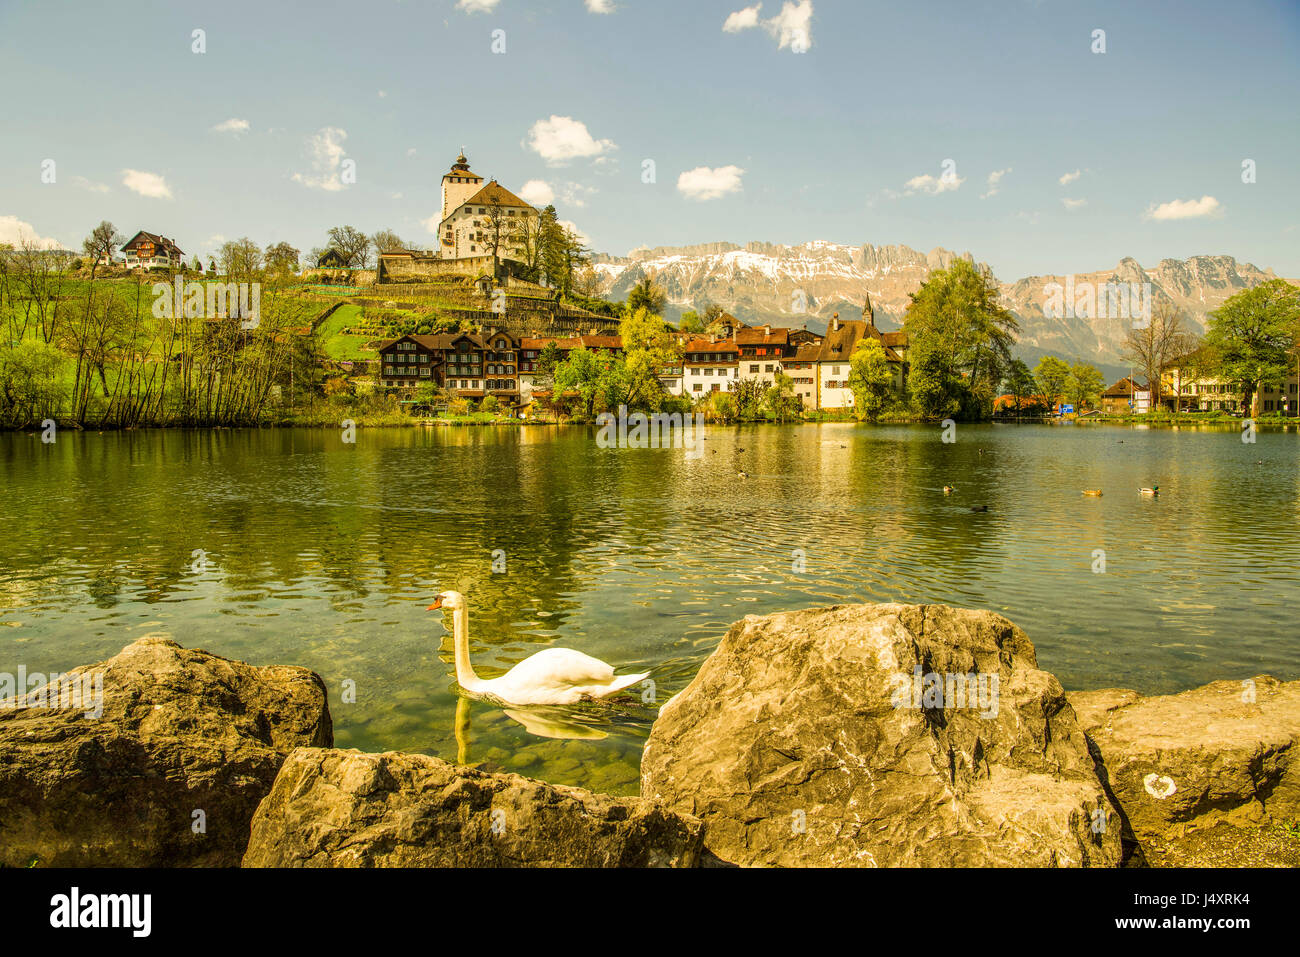 View of Werdenberg Castle seen from Buchs lake, Sankt Gallen canton, Switzerland. Derek Hudson / Alamy Stock Photo Stock Photo